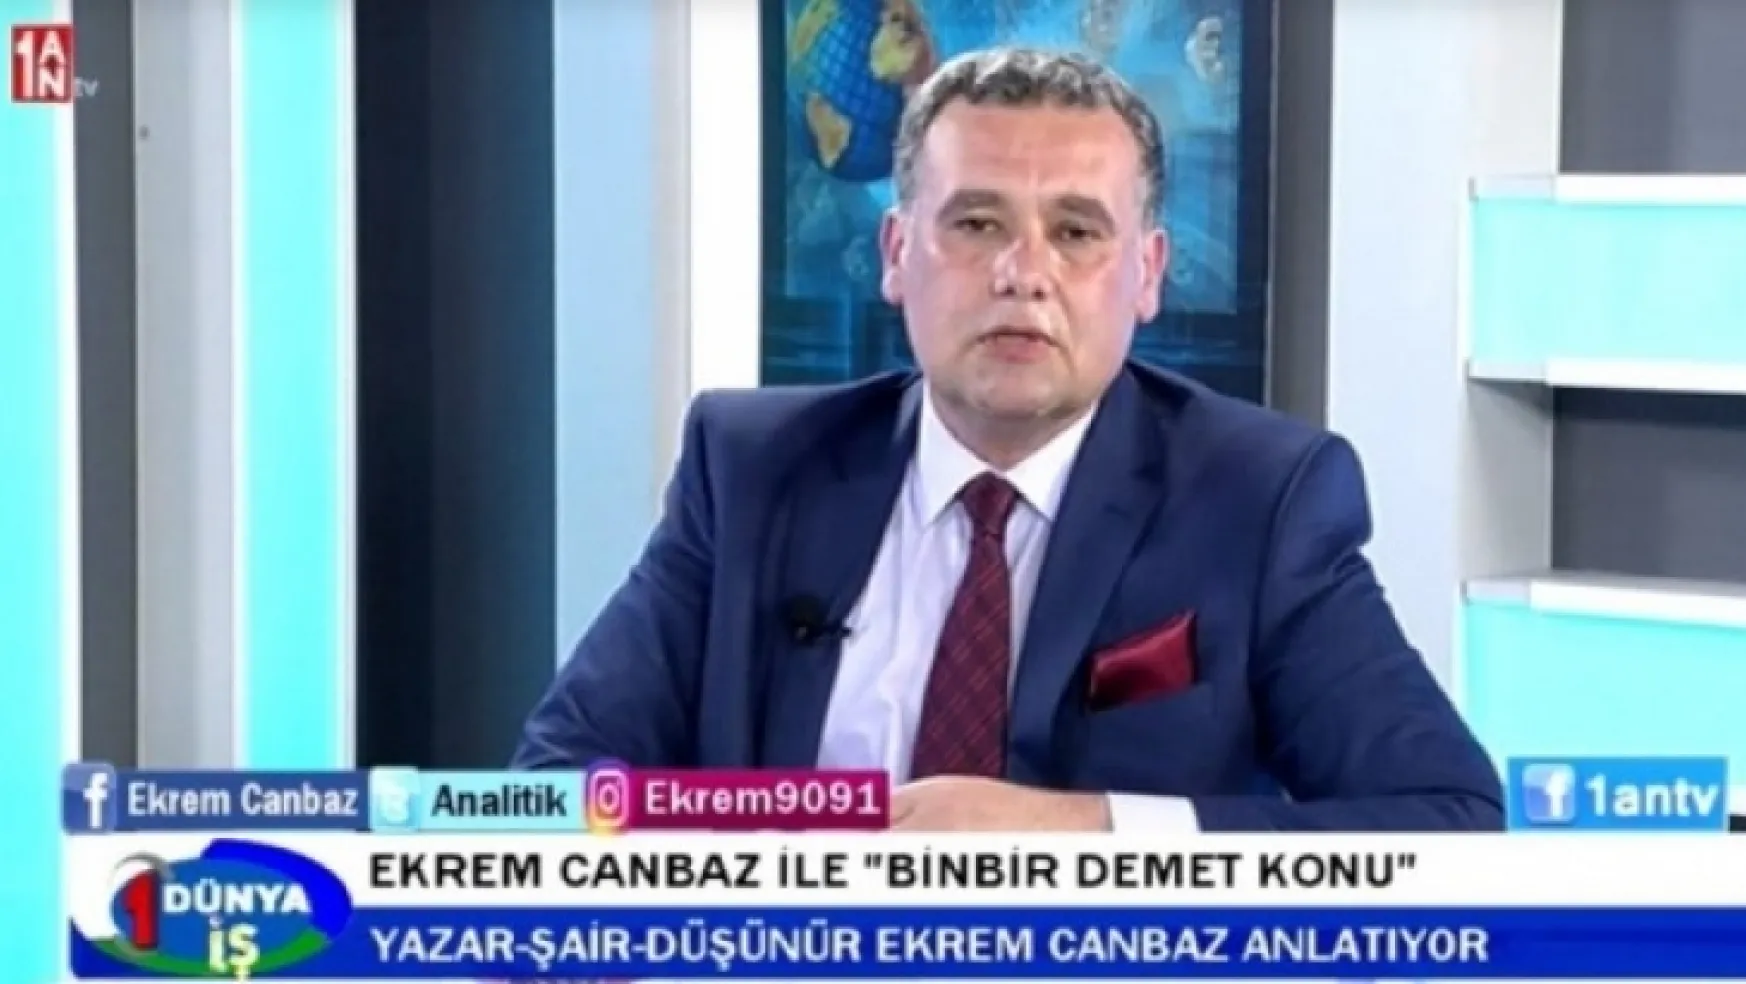 Ekrem Canbaz canlı yayında Turgutlu'nun Trafik Sorununa değindi